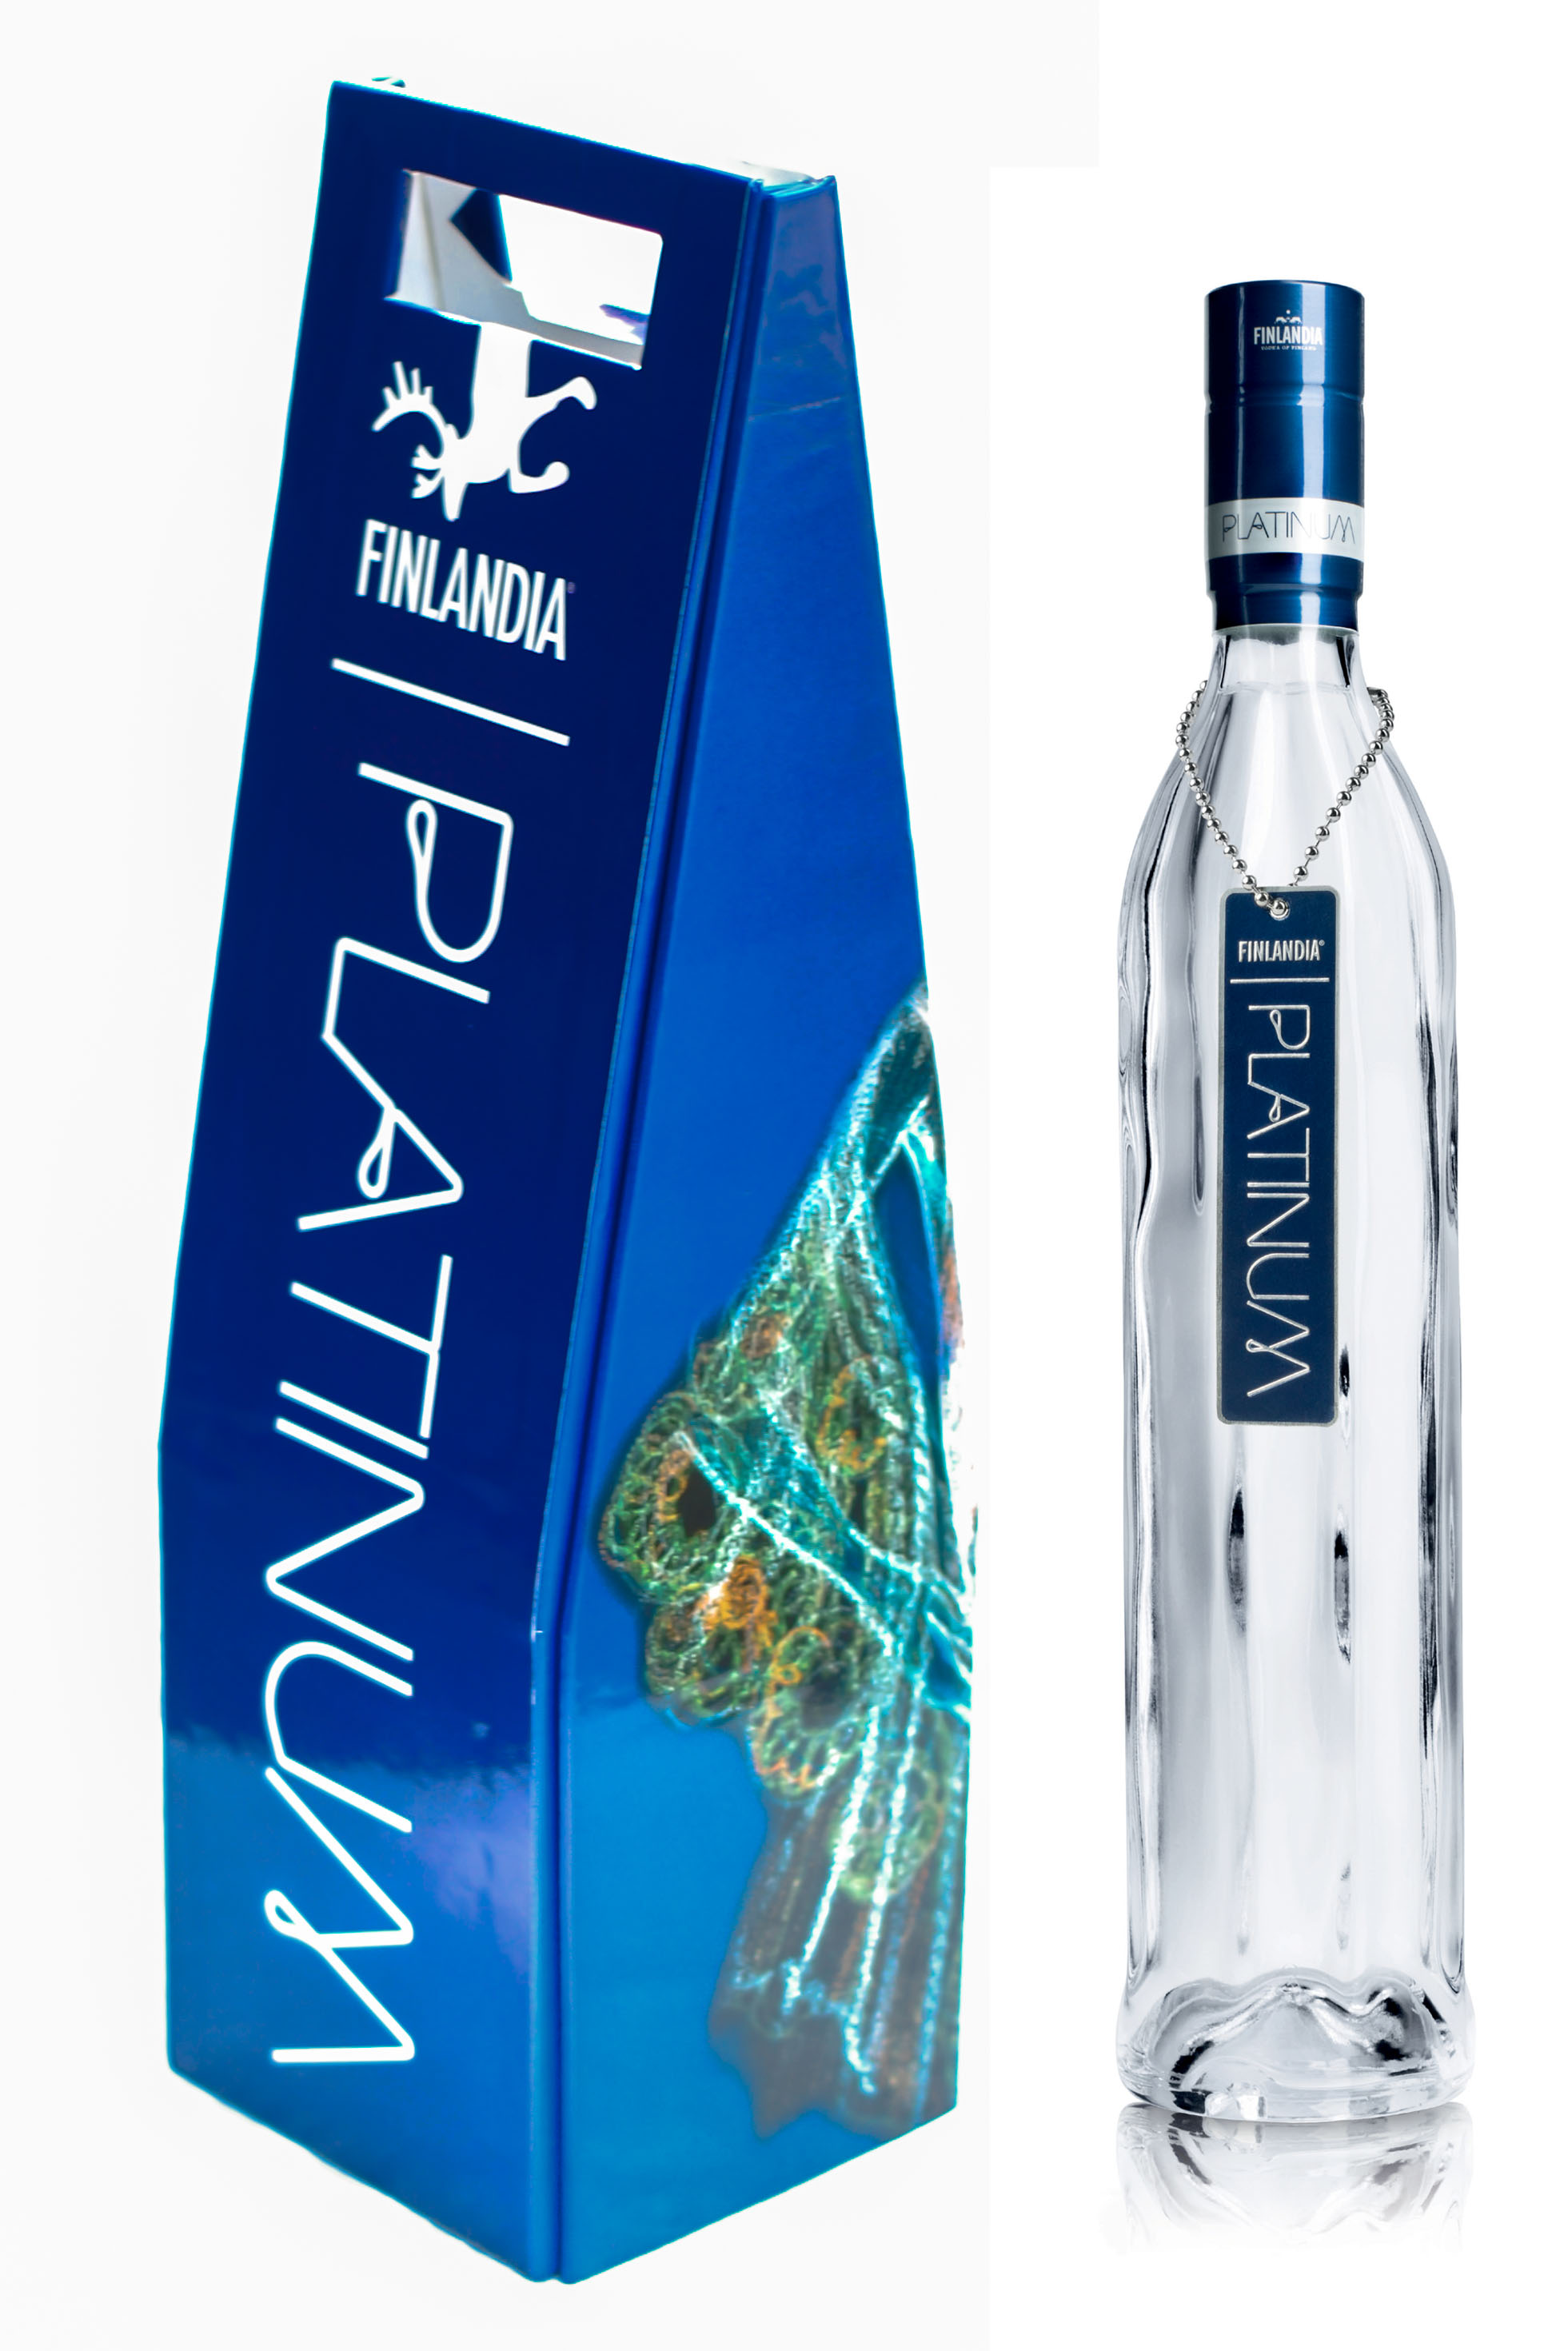 Designer Suneet Varma Pack for Platinum Finlandia Vodka